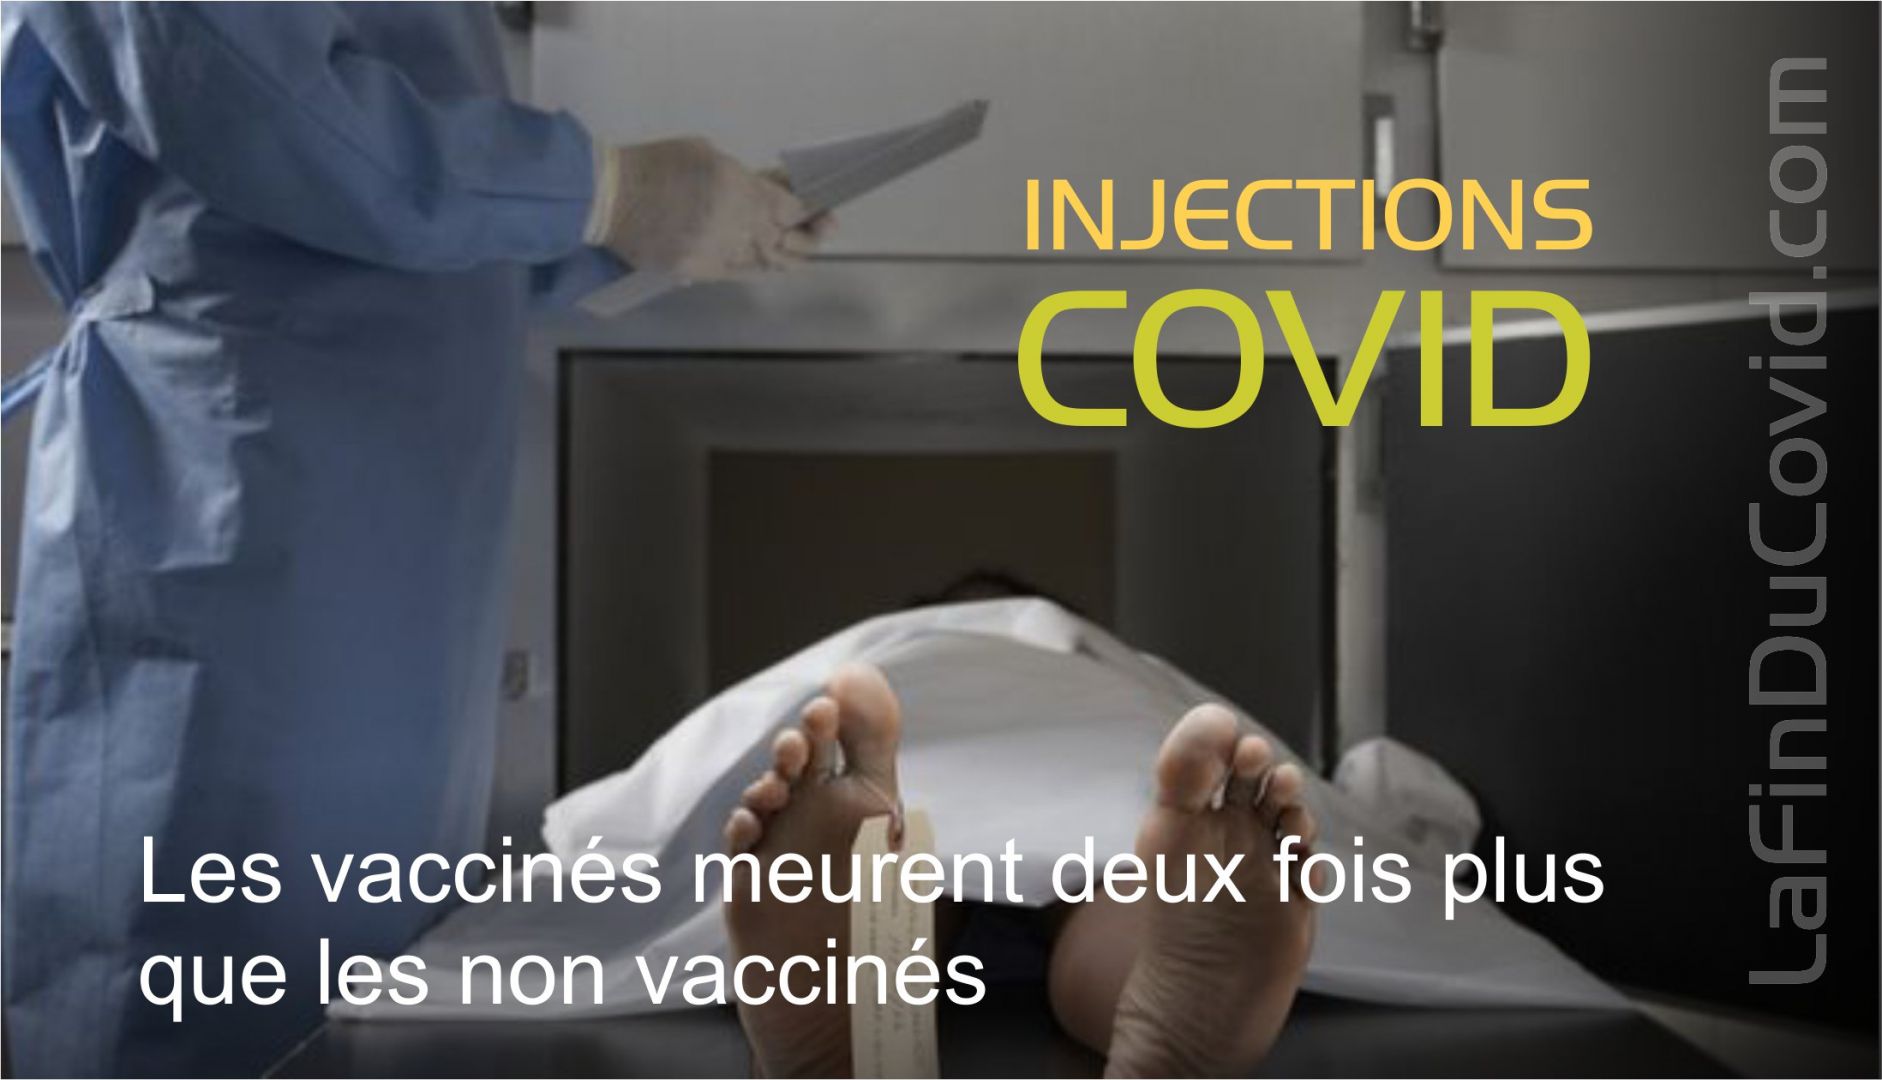 Les vaccinés meurent deux fois plus que les non vaccinés en concordance avec les données internationales